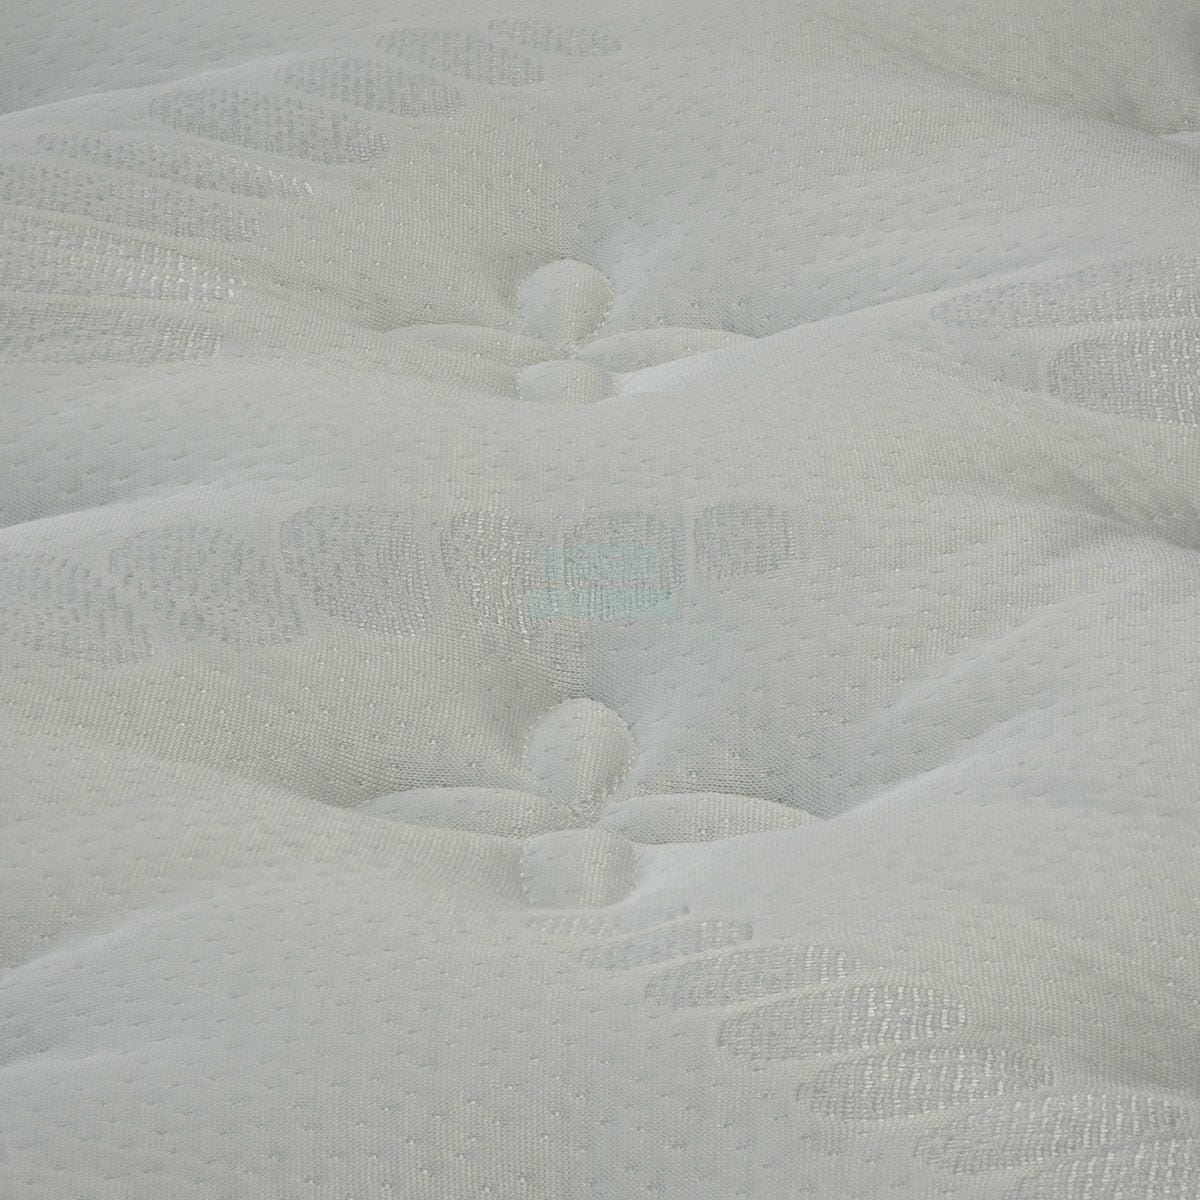 Viro Tender Rest with Pillow Top Mattress (12inch)-Viro-Sleep Space